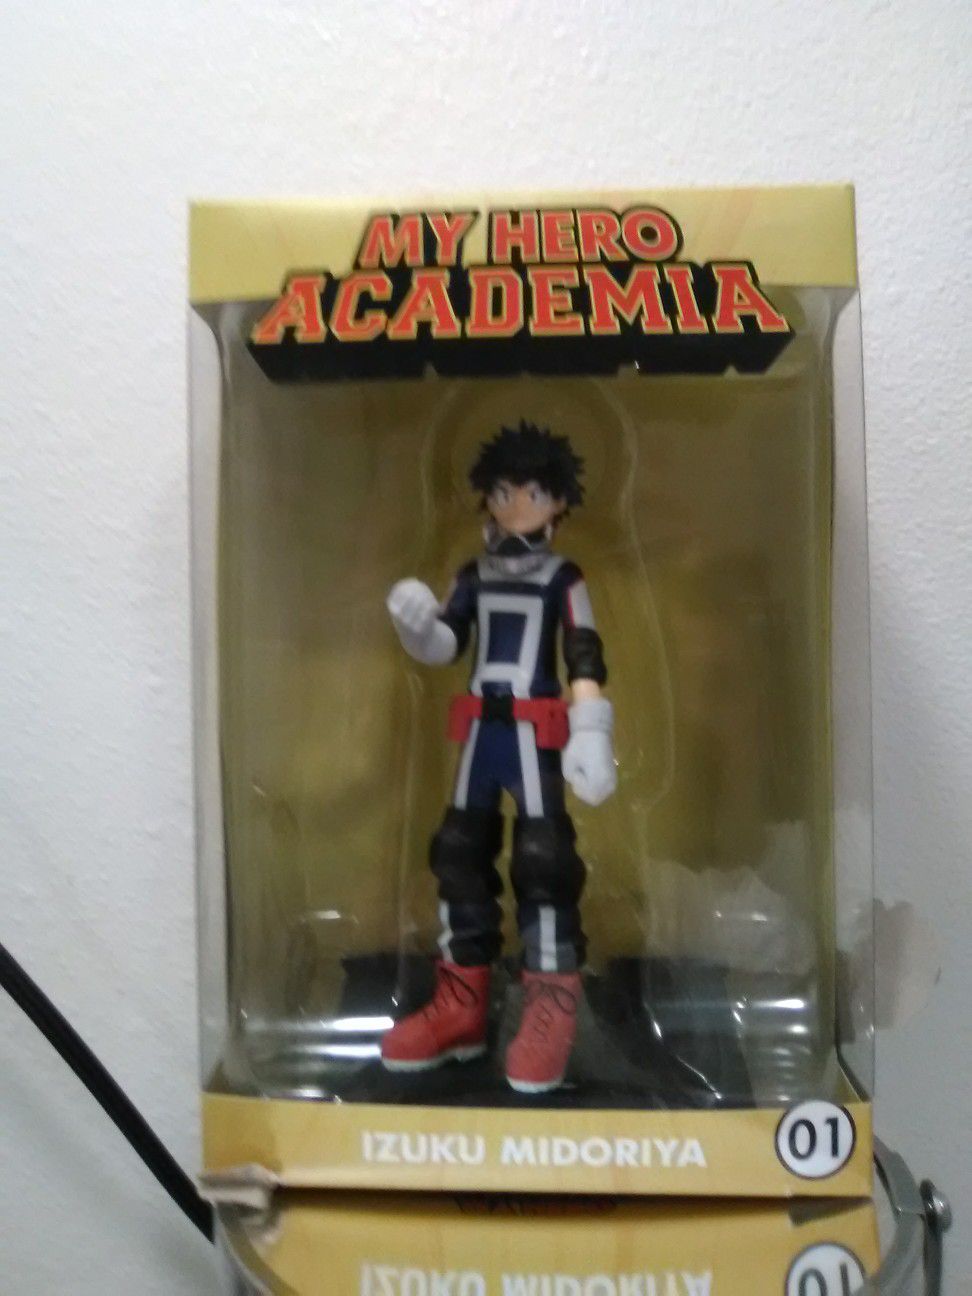 My Hero Academia Izuku Midoriya collectible action figure